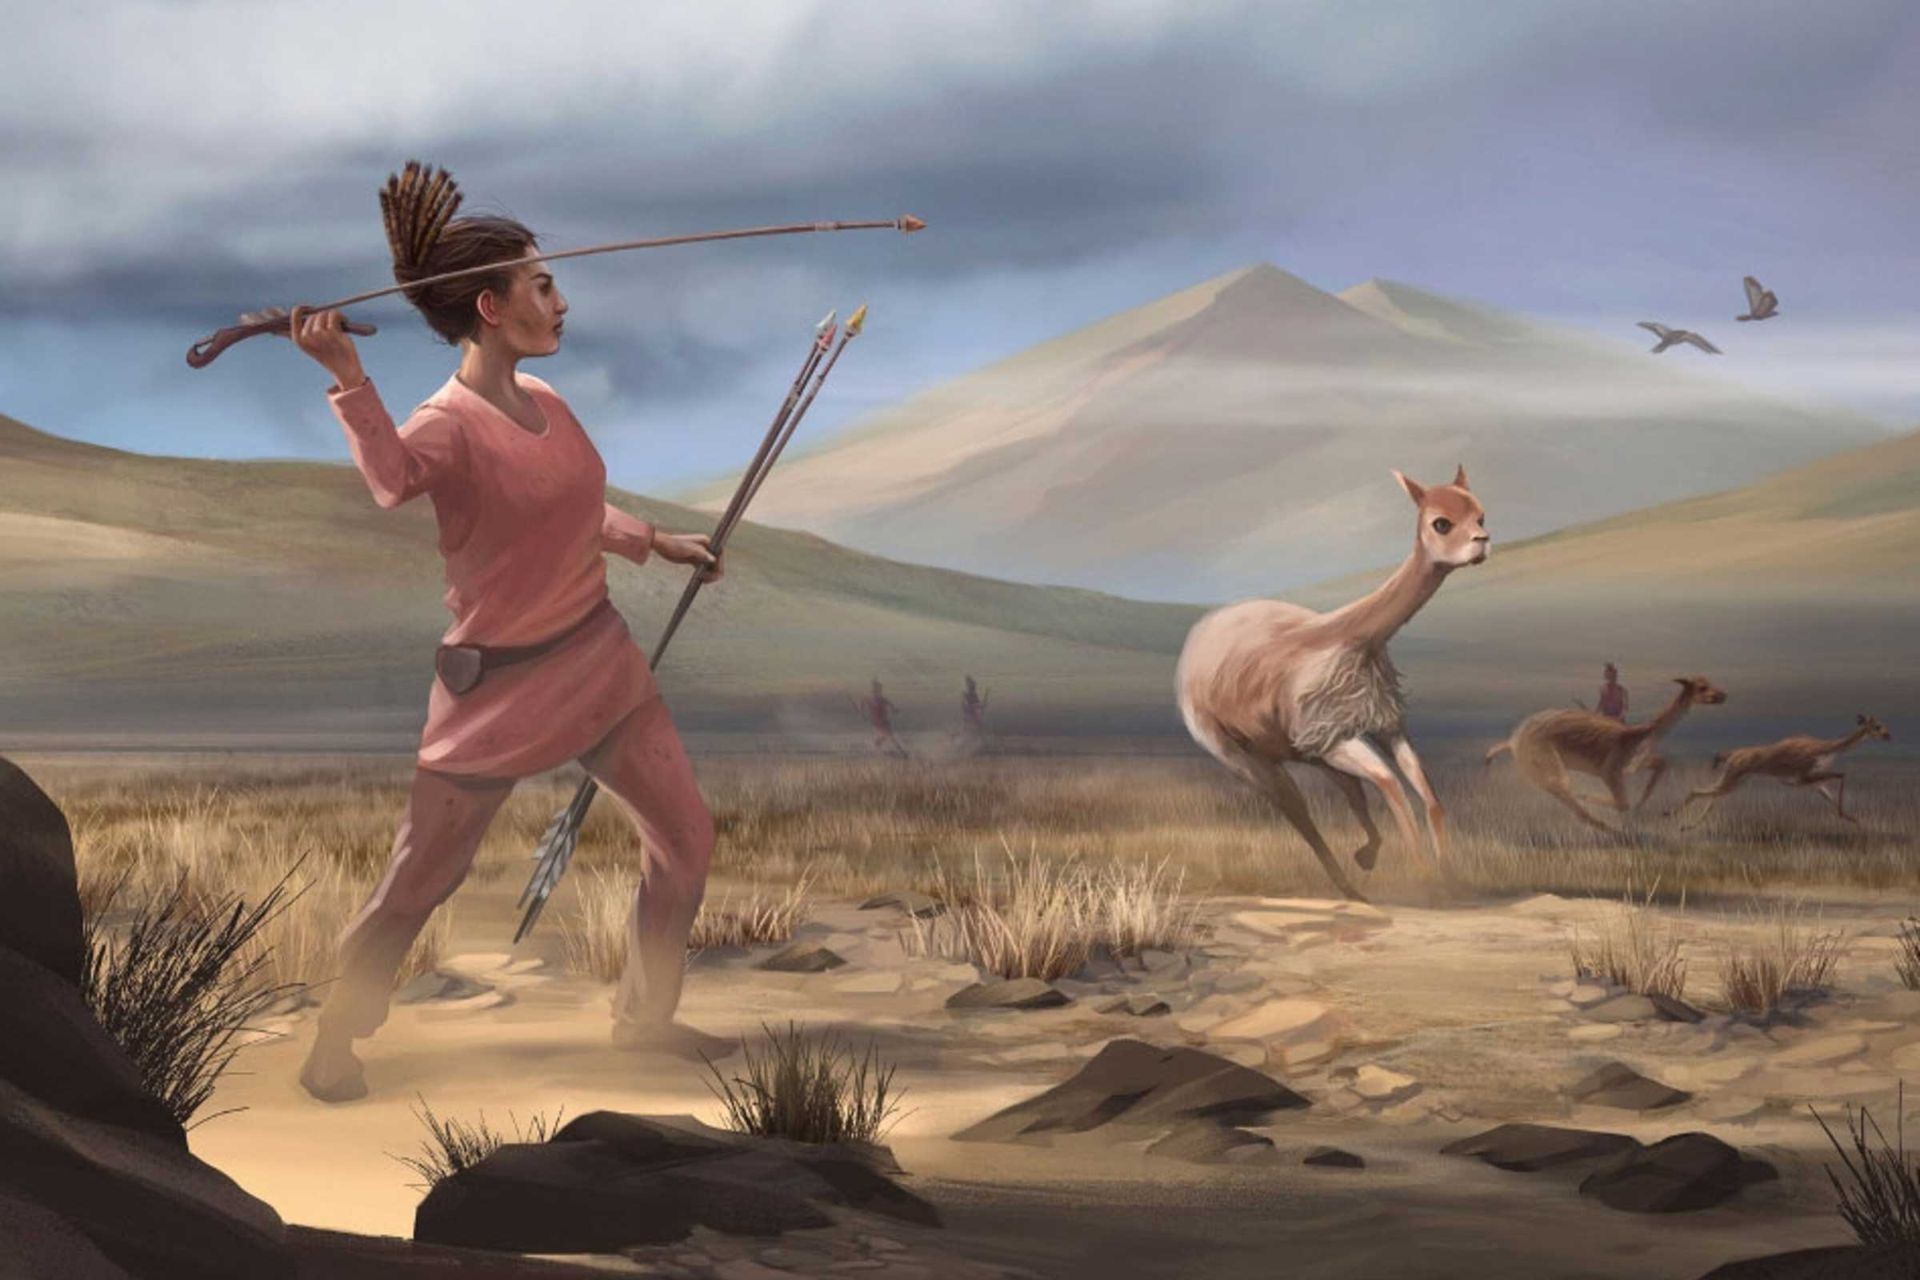 تصویر هنری از زن باستانی درحال شکار